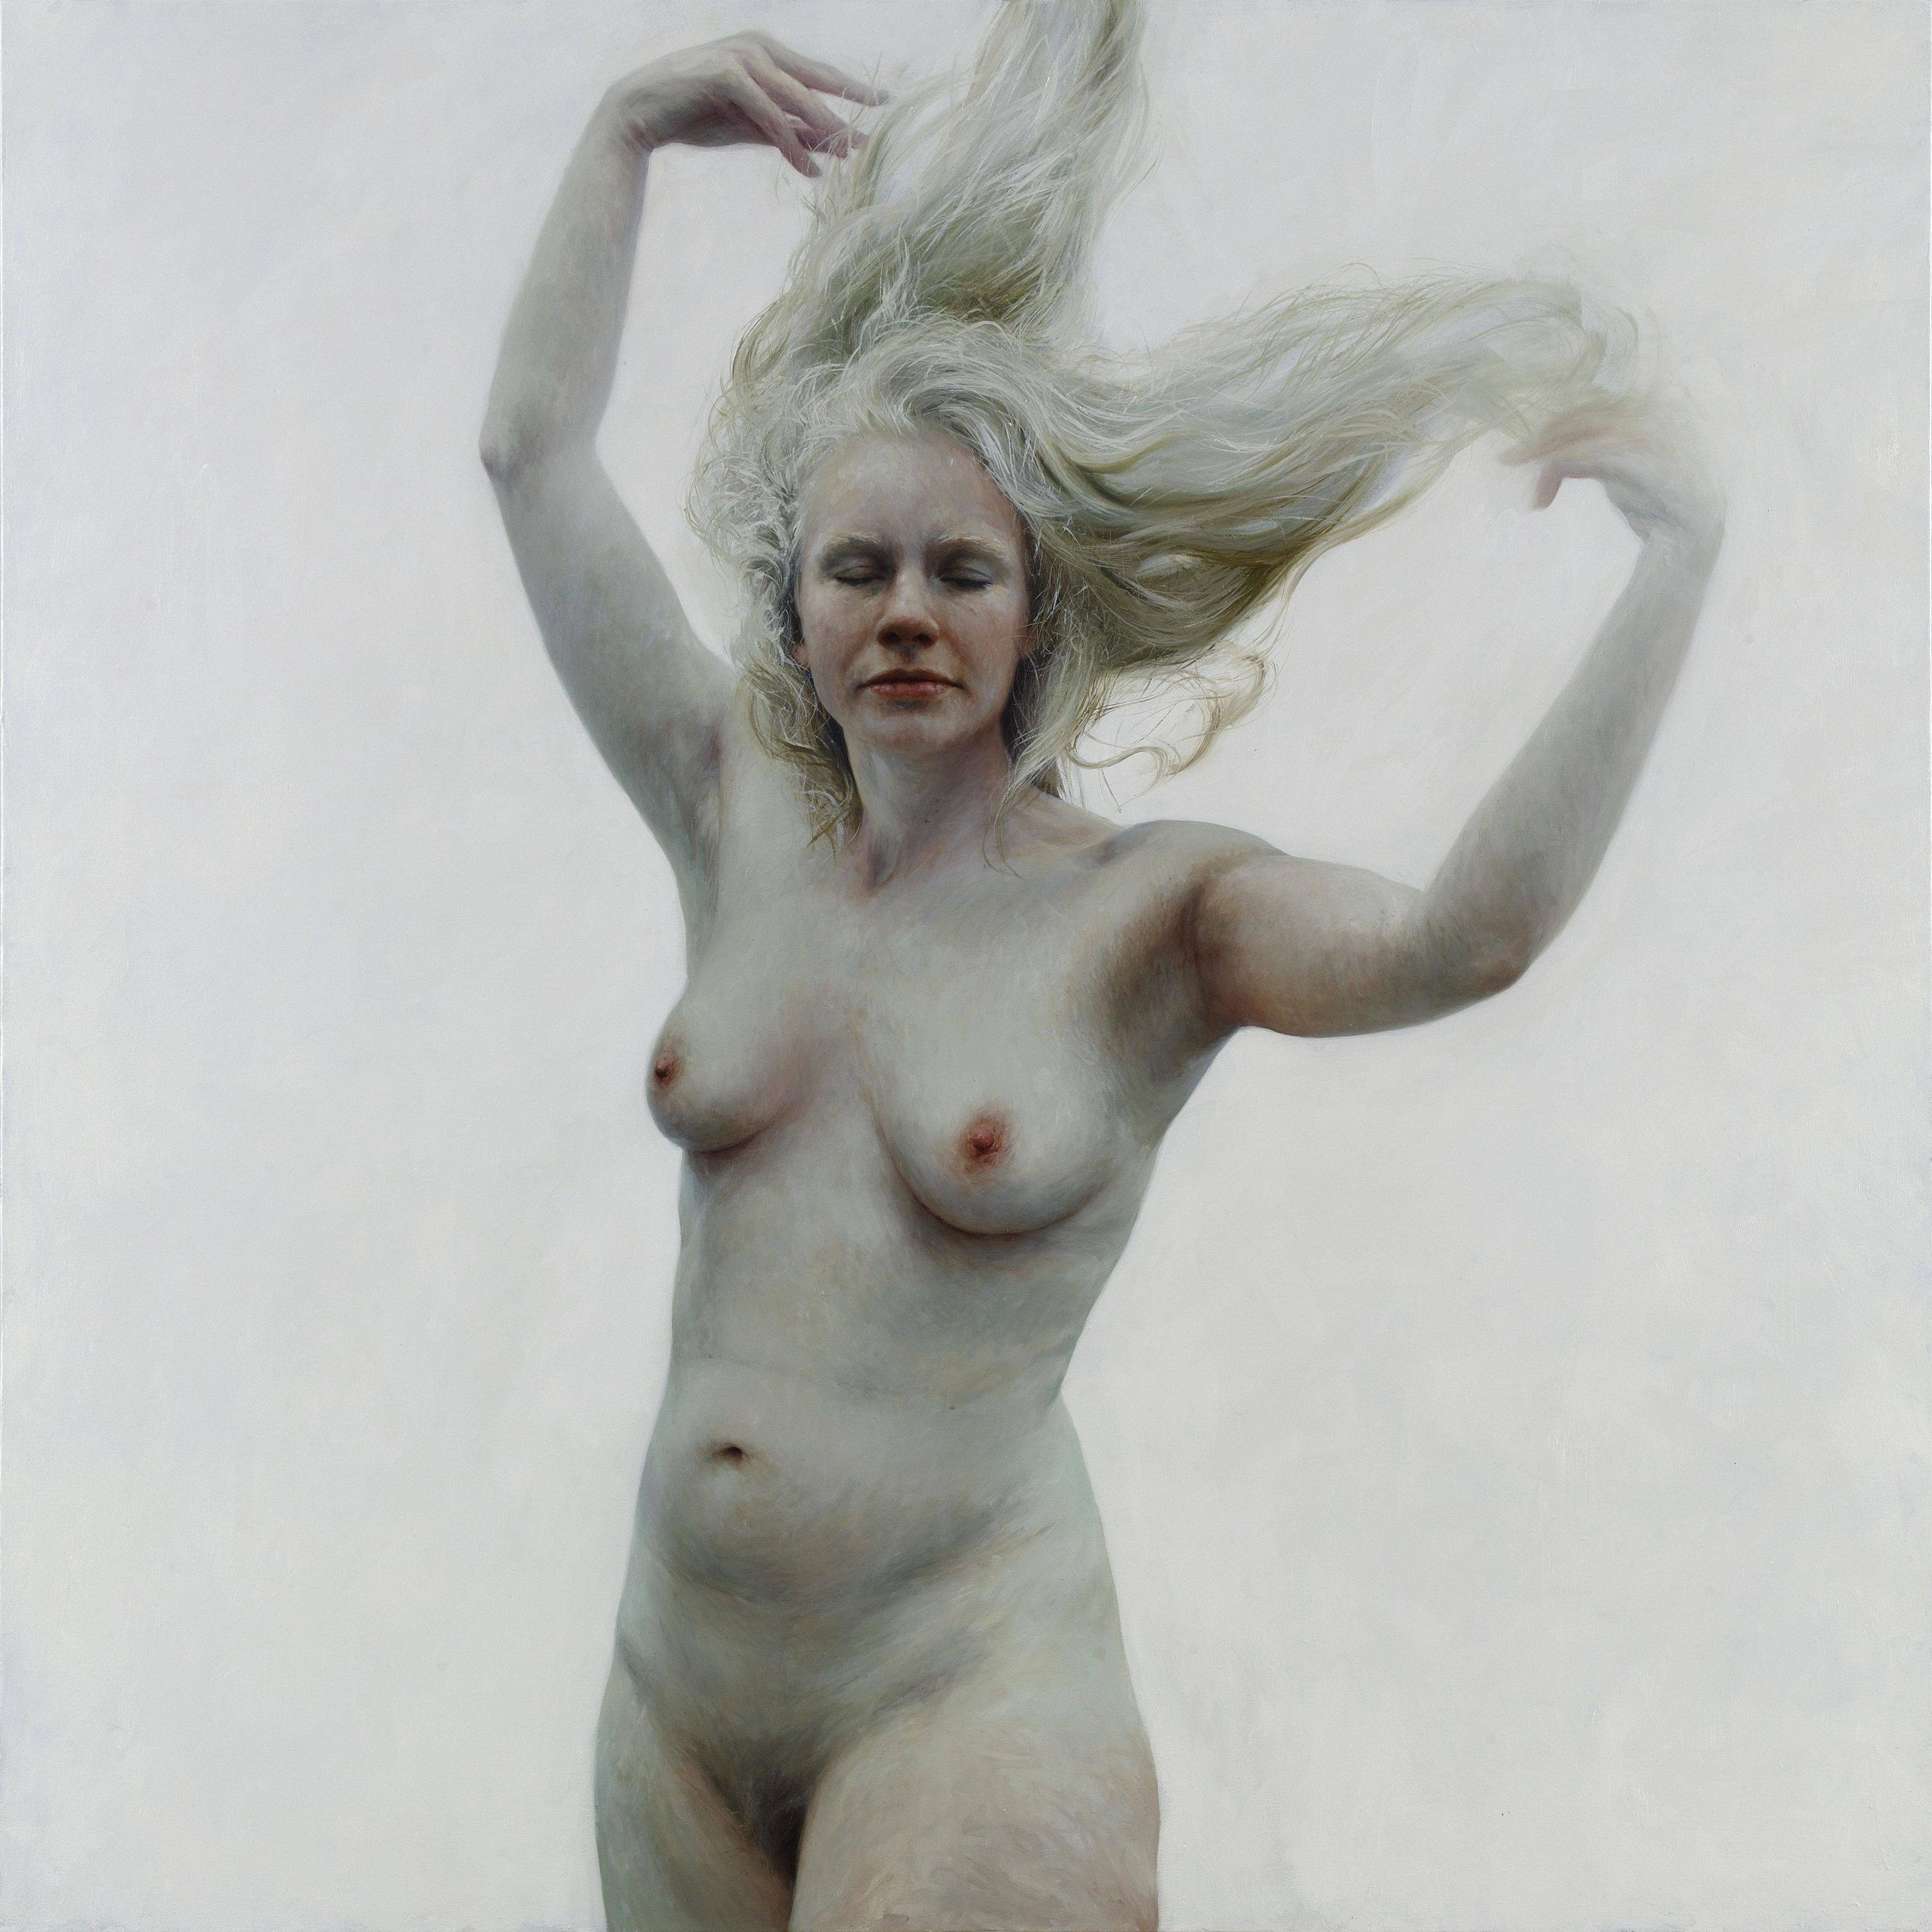 Real Albino Women Porn - Albino Girls Nude (51 photos) - motherless porn pics